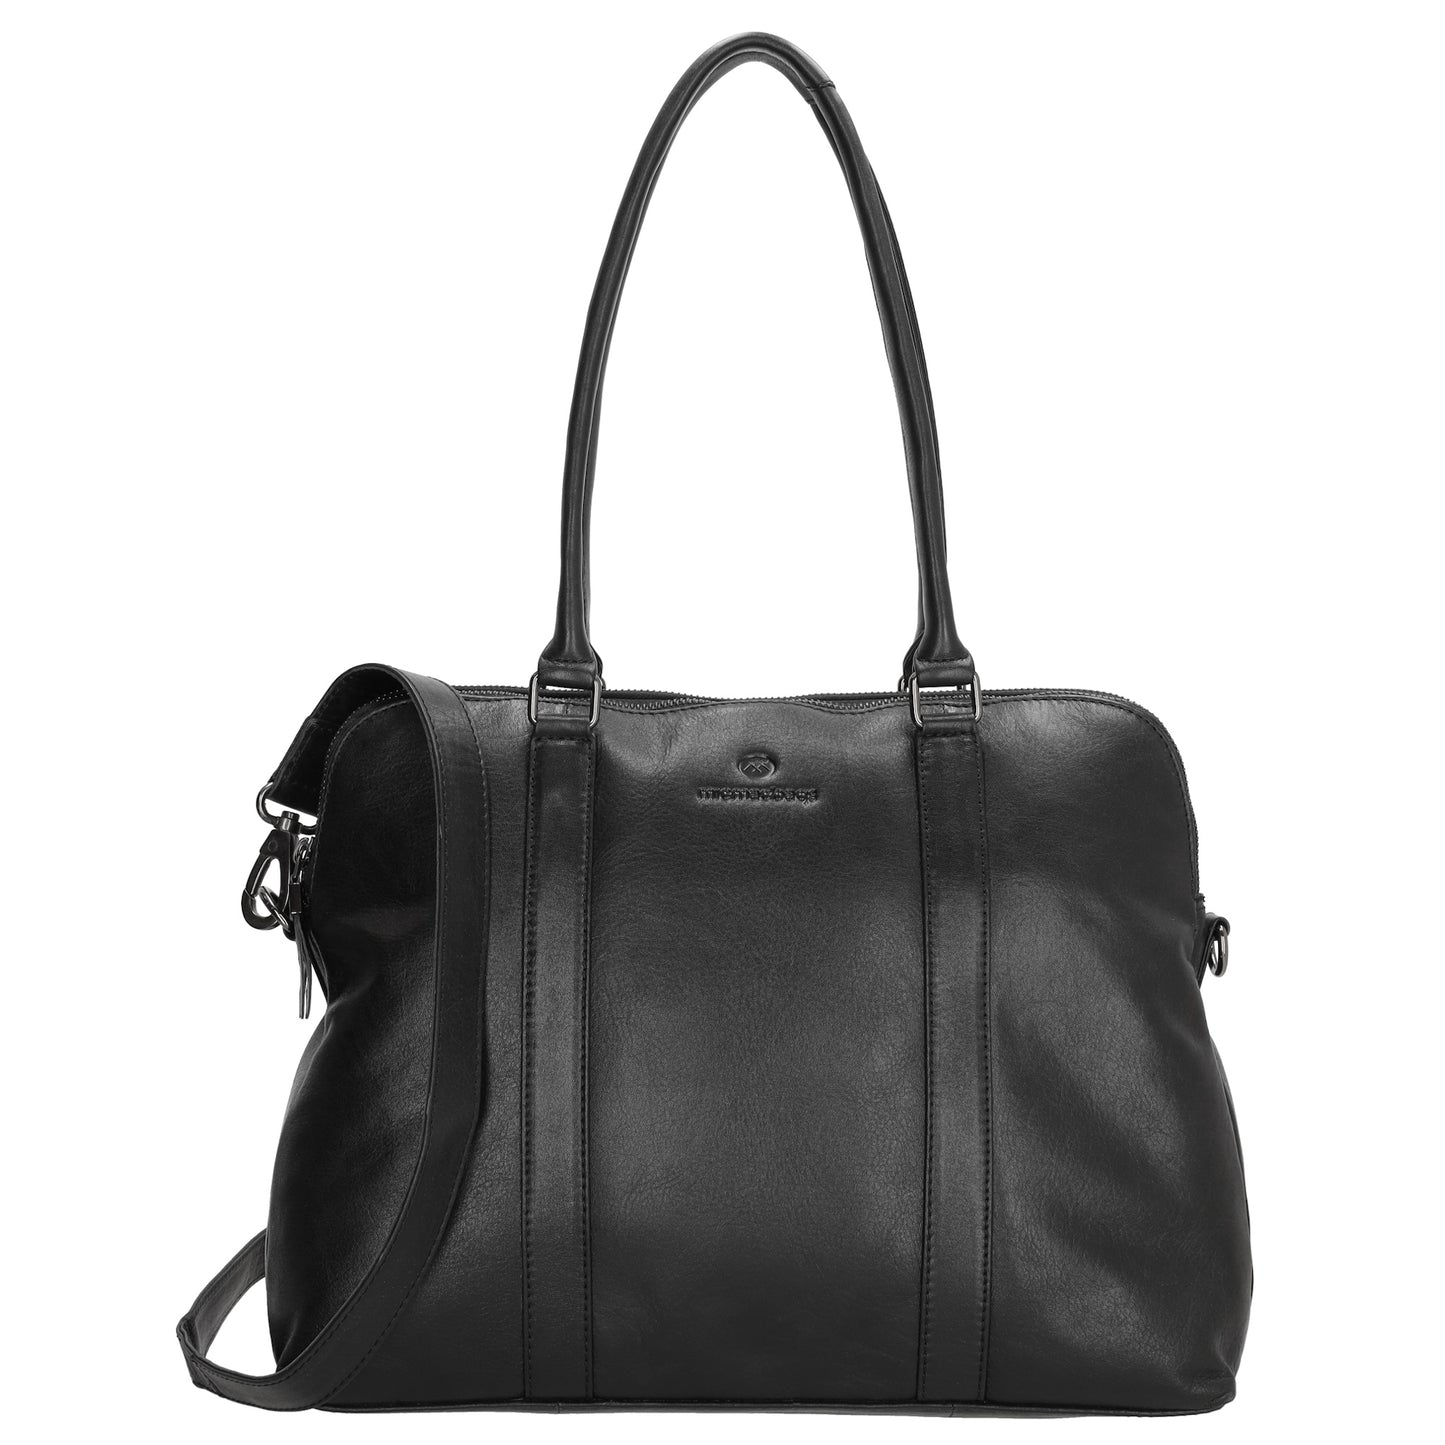 Schulter-|Businesstasche 36 x 28,5cm in Schwarz mit Reißverschluss